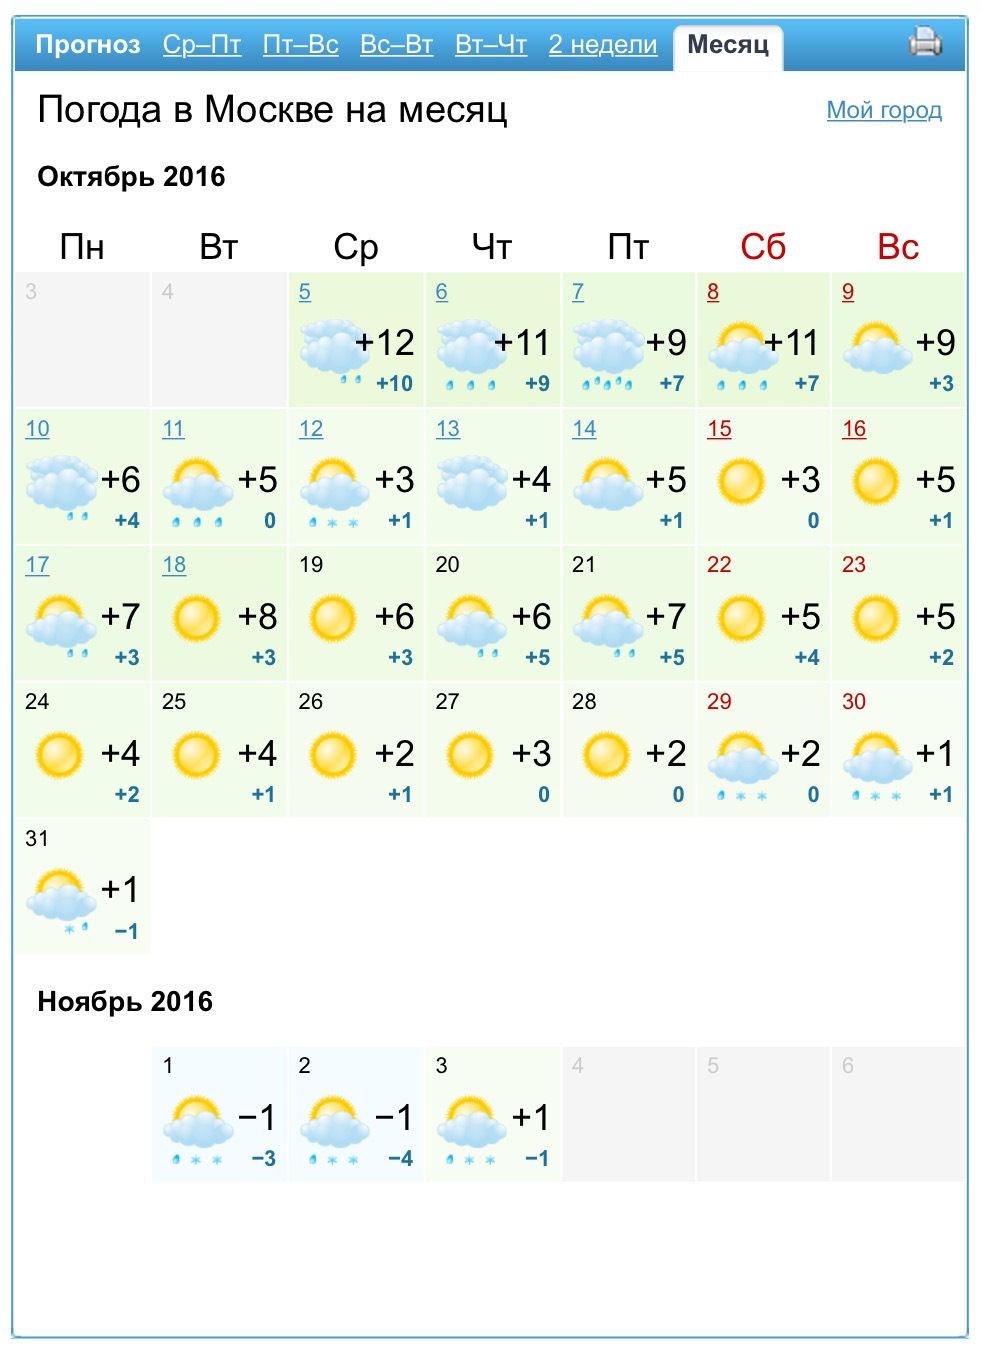 Погода в москве на неделю почасовой. Прогноз погоды на неделю. Прогноз погоды в Москве. Прогноспогодынанеделю. Погода за неделю.